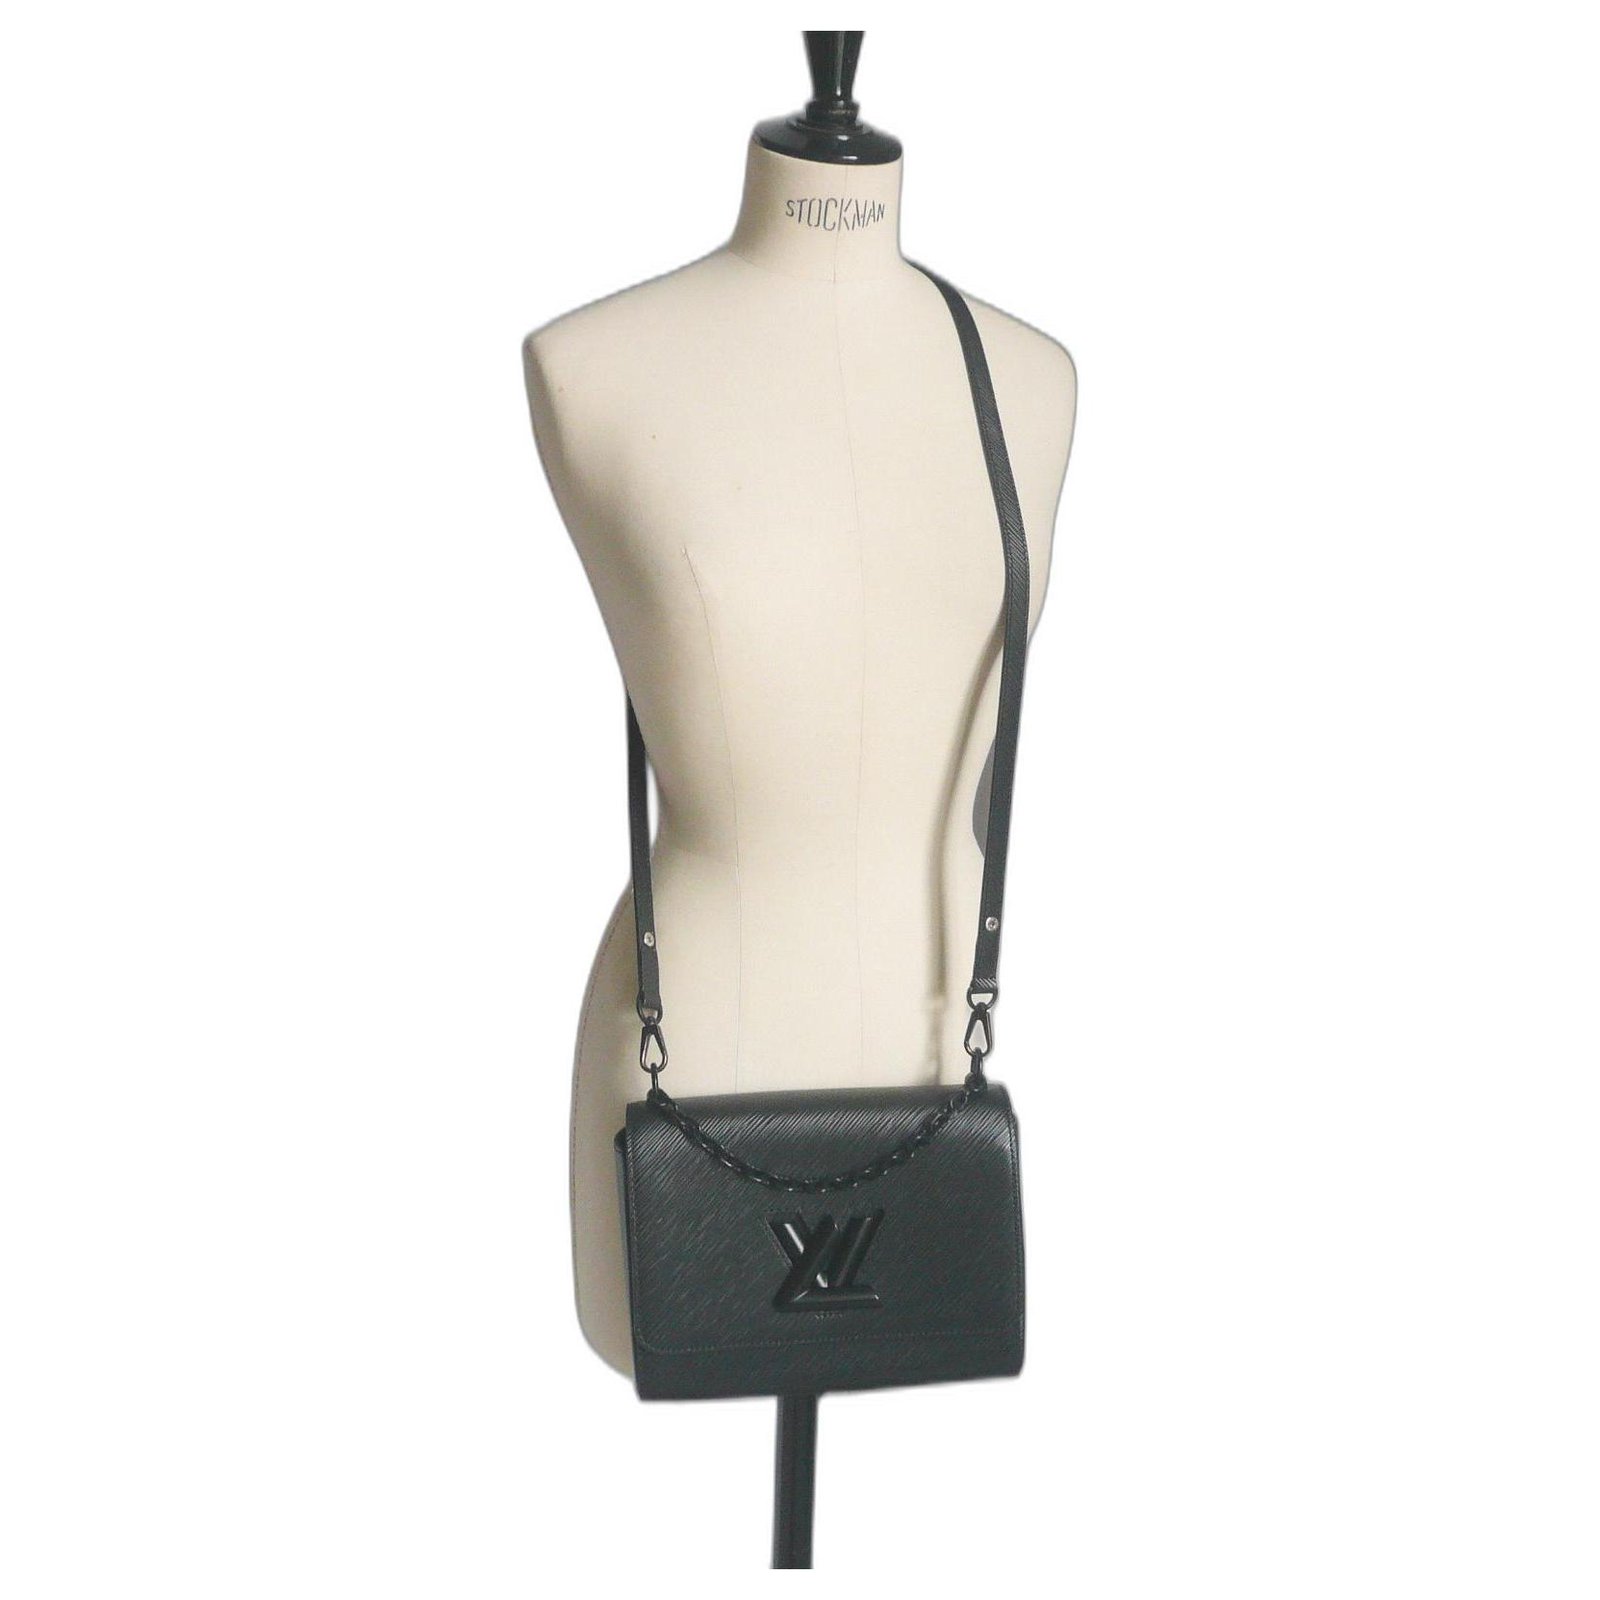 Louis Vuitton Twist Plexiglass Top Handle Bag Epi Leather MM